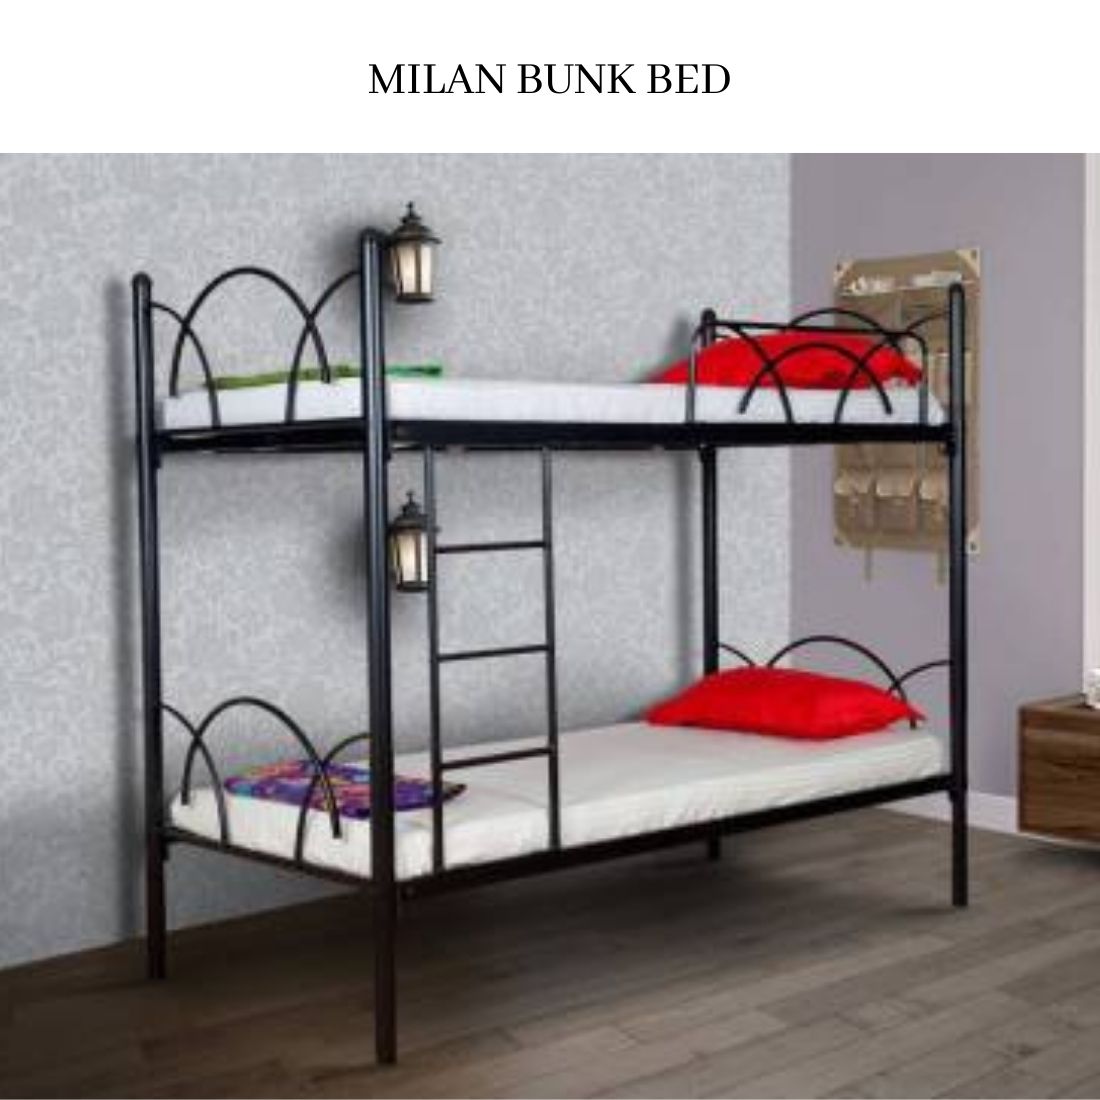 Milan Bunk Bed - metallikafurniture.com